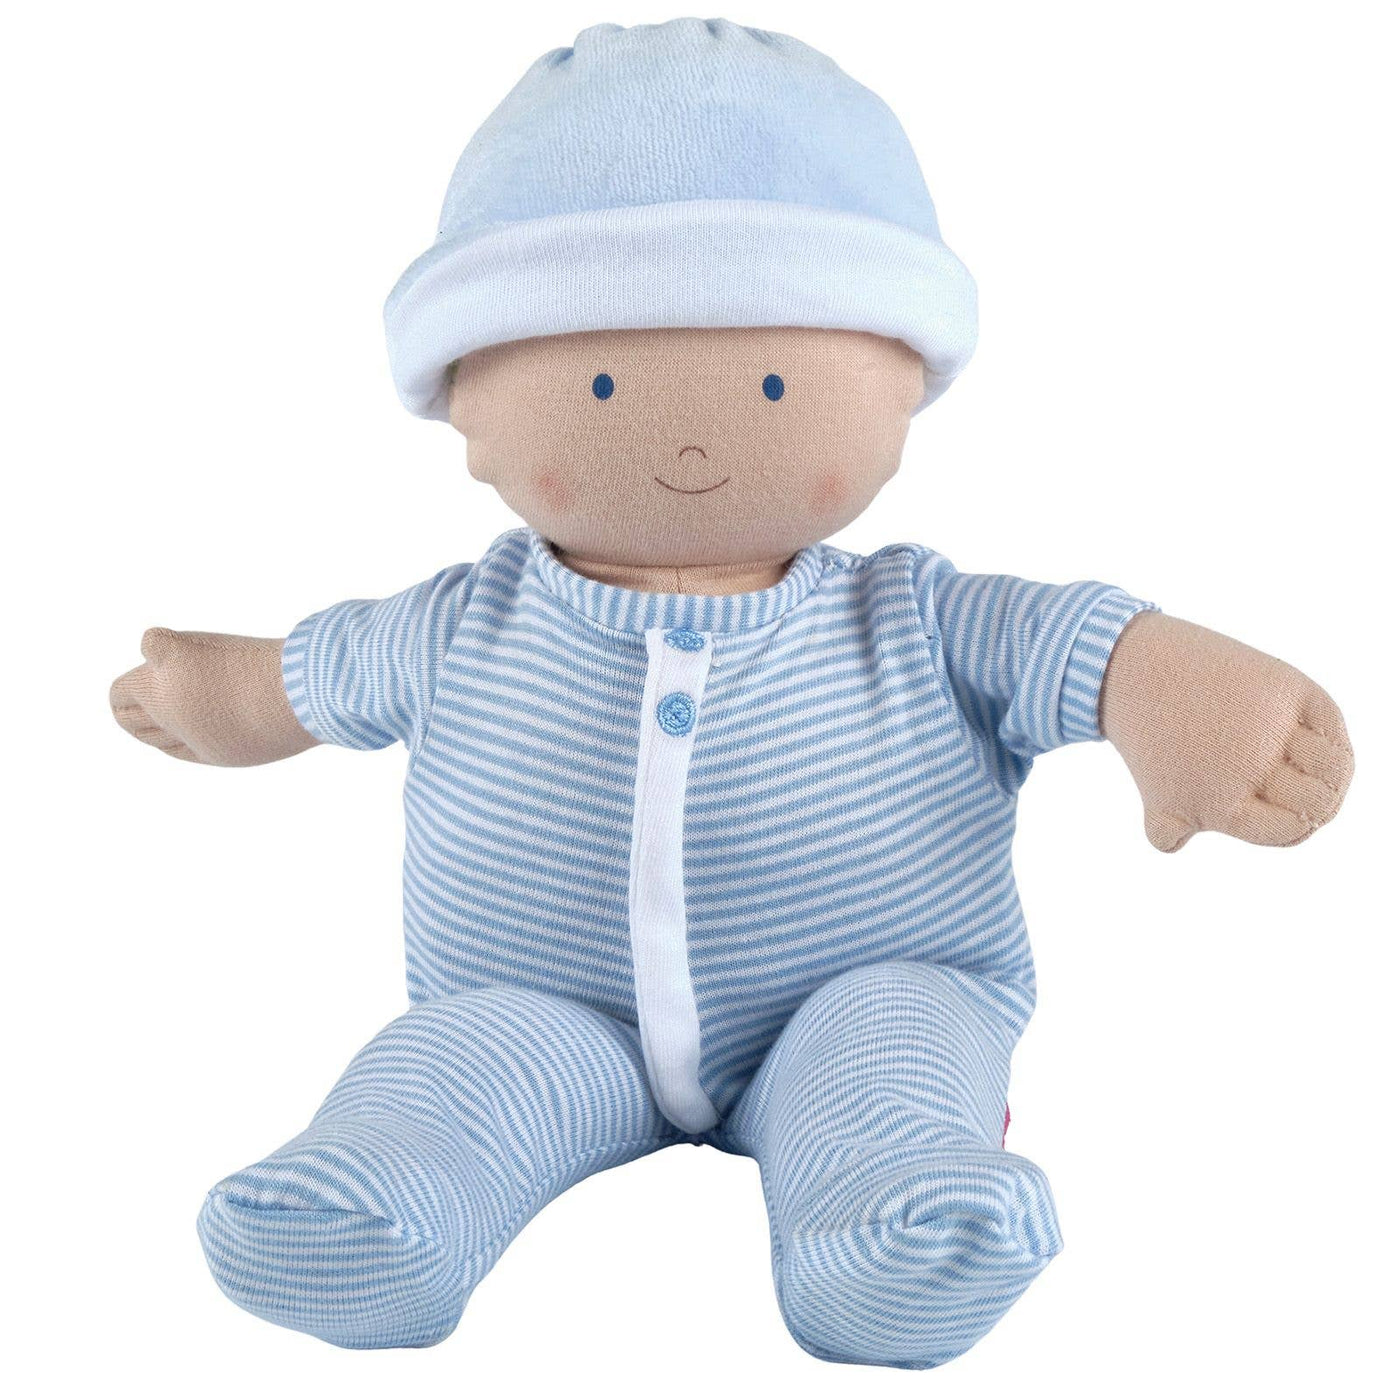 Tikiri Toys LLC - Cherub Baby Boy Doll in Blue Outfit - Mumzie's Children